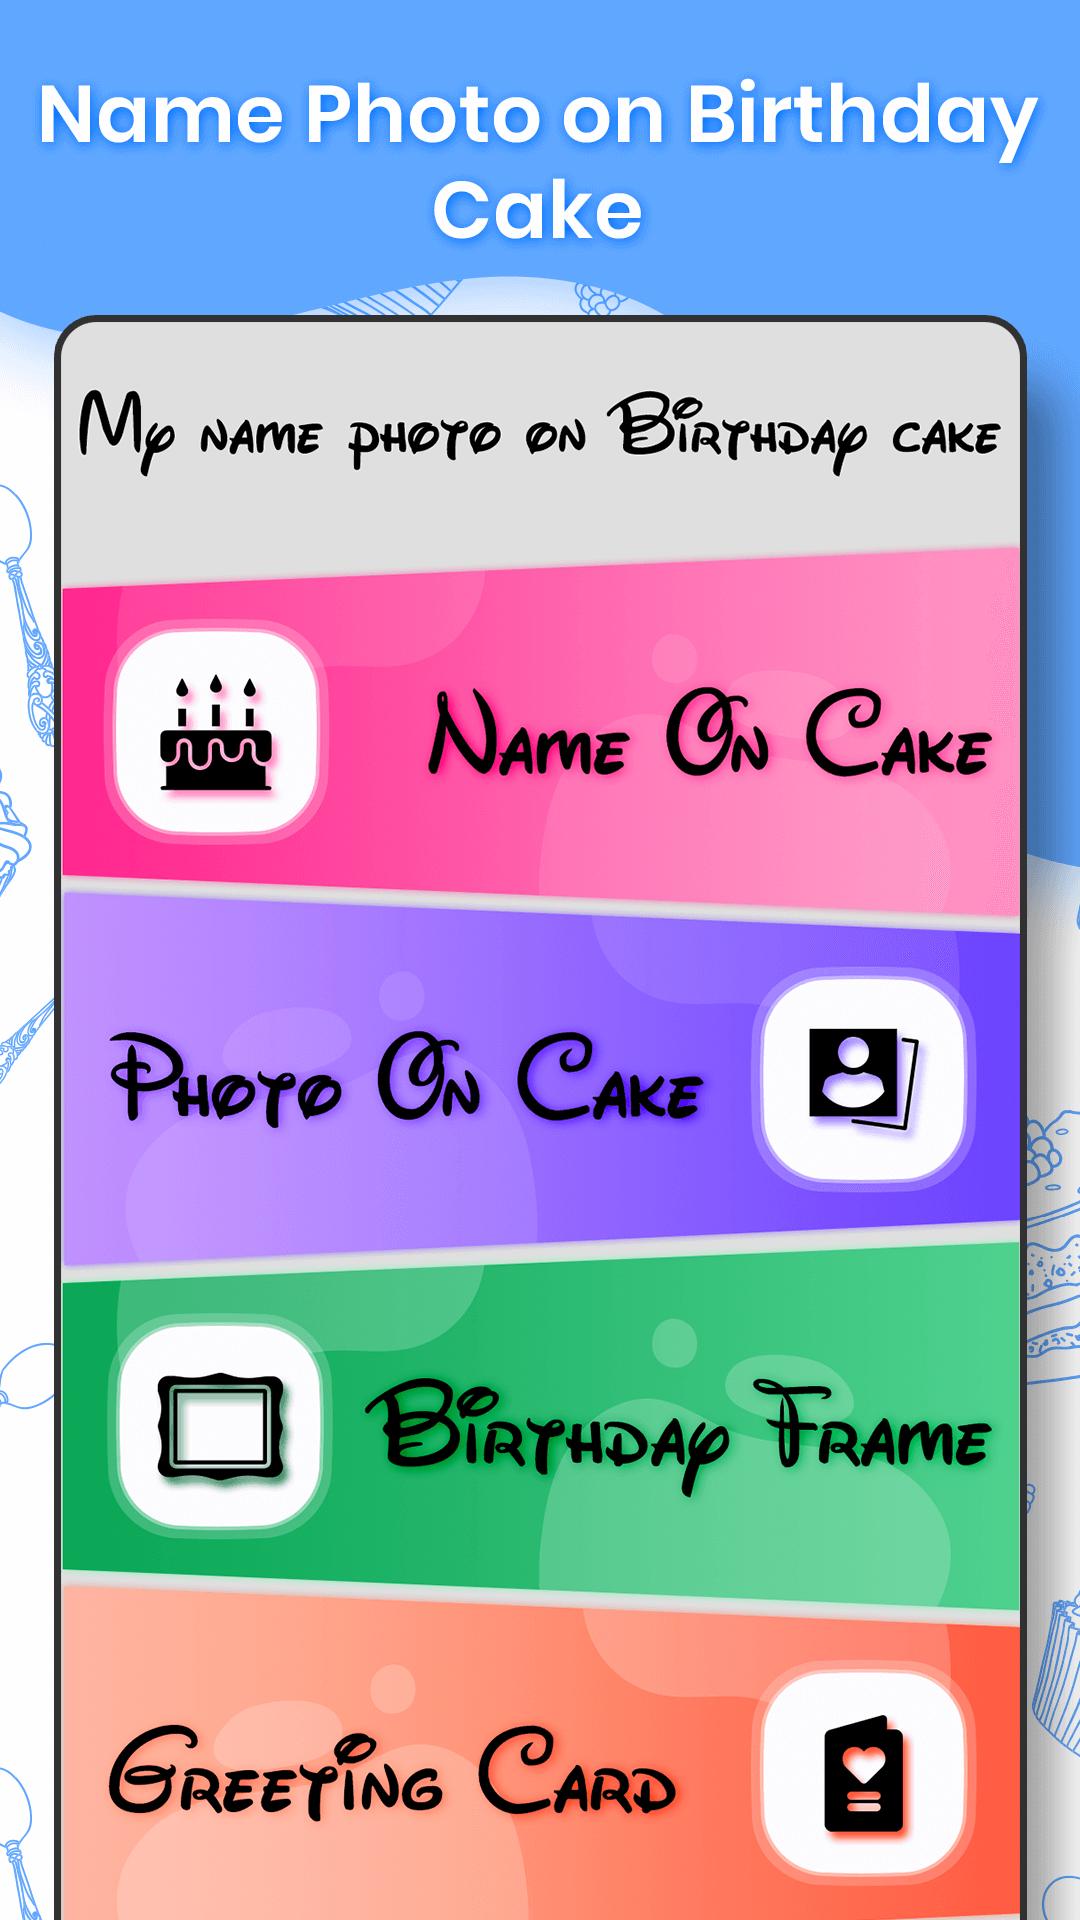 Name and photo on cake 1.0.1 Screenshot 1